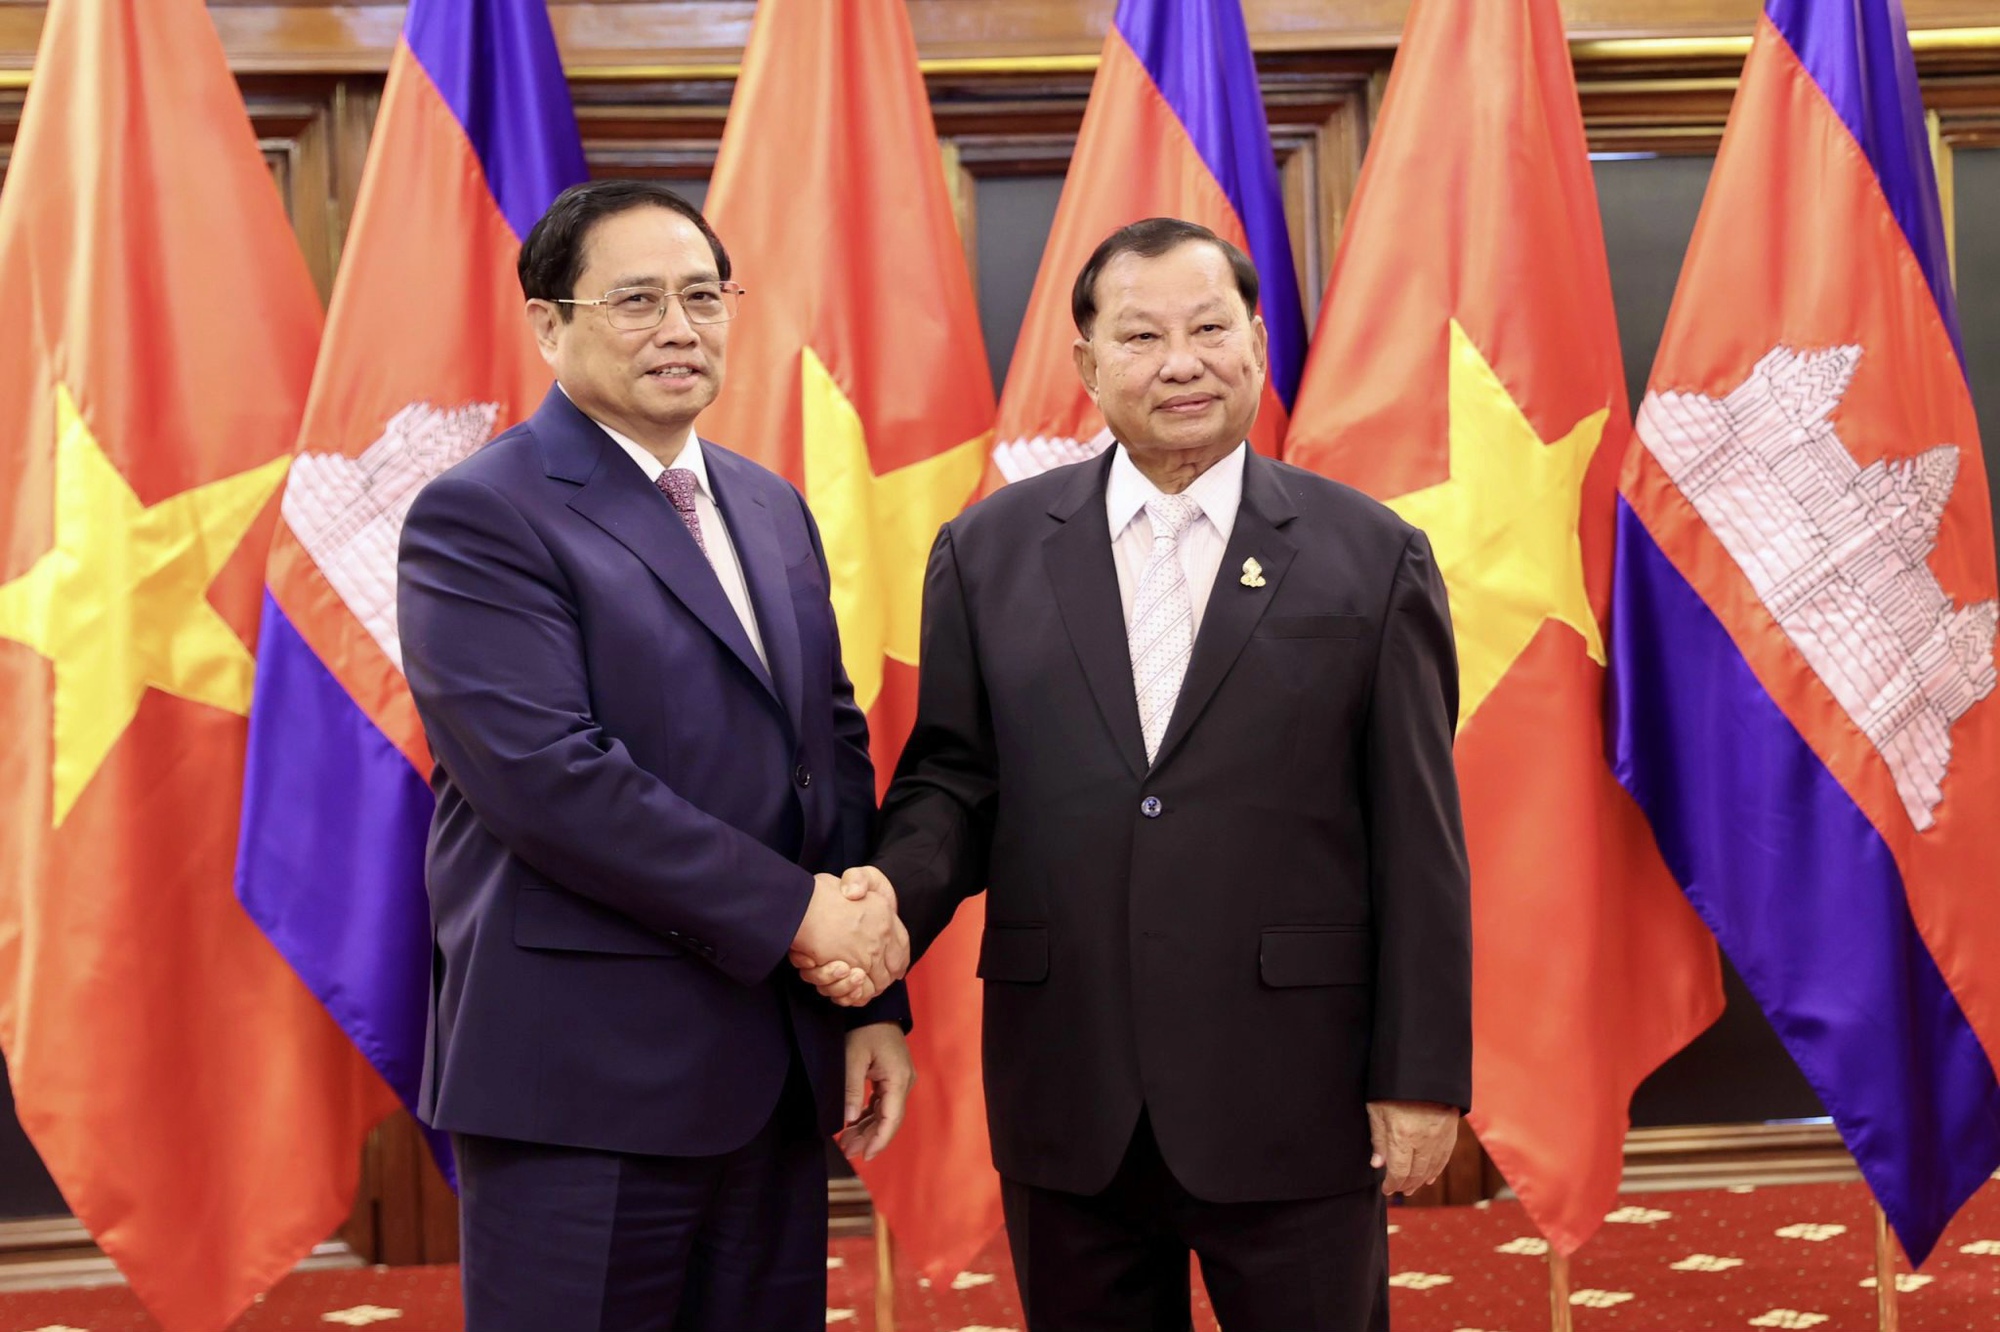 Việt Nam ủng hộ Campuchia: Việt Nam luôn tự hào ủng hộ cho đất nước láng giềng Campuchia, đặc biệt là trong những năm qua khi hai nước đã củng cố và phát triển quan hệ hữu nghị và tiếp tục hợp tác chặt chẽ. Hãy cùng chiêm ngưỡng hình ảnh để thấy sự đoàn kết và tinh thần đồng lòng của hai dân tộc anh em.